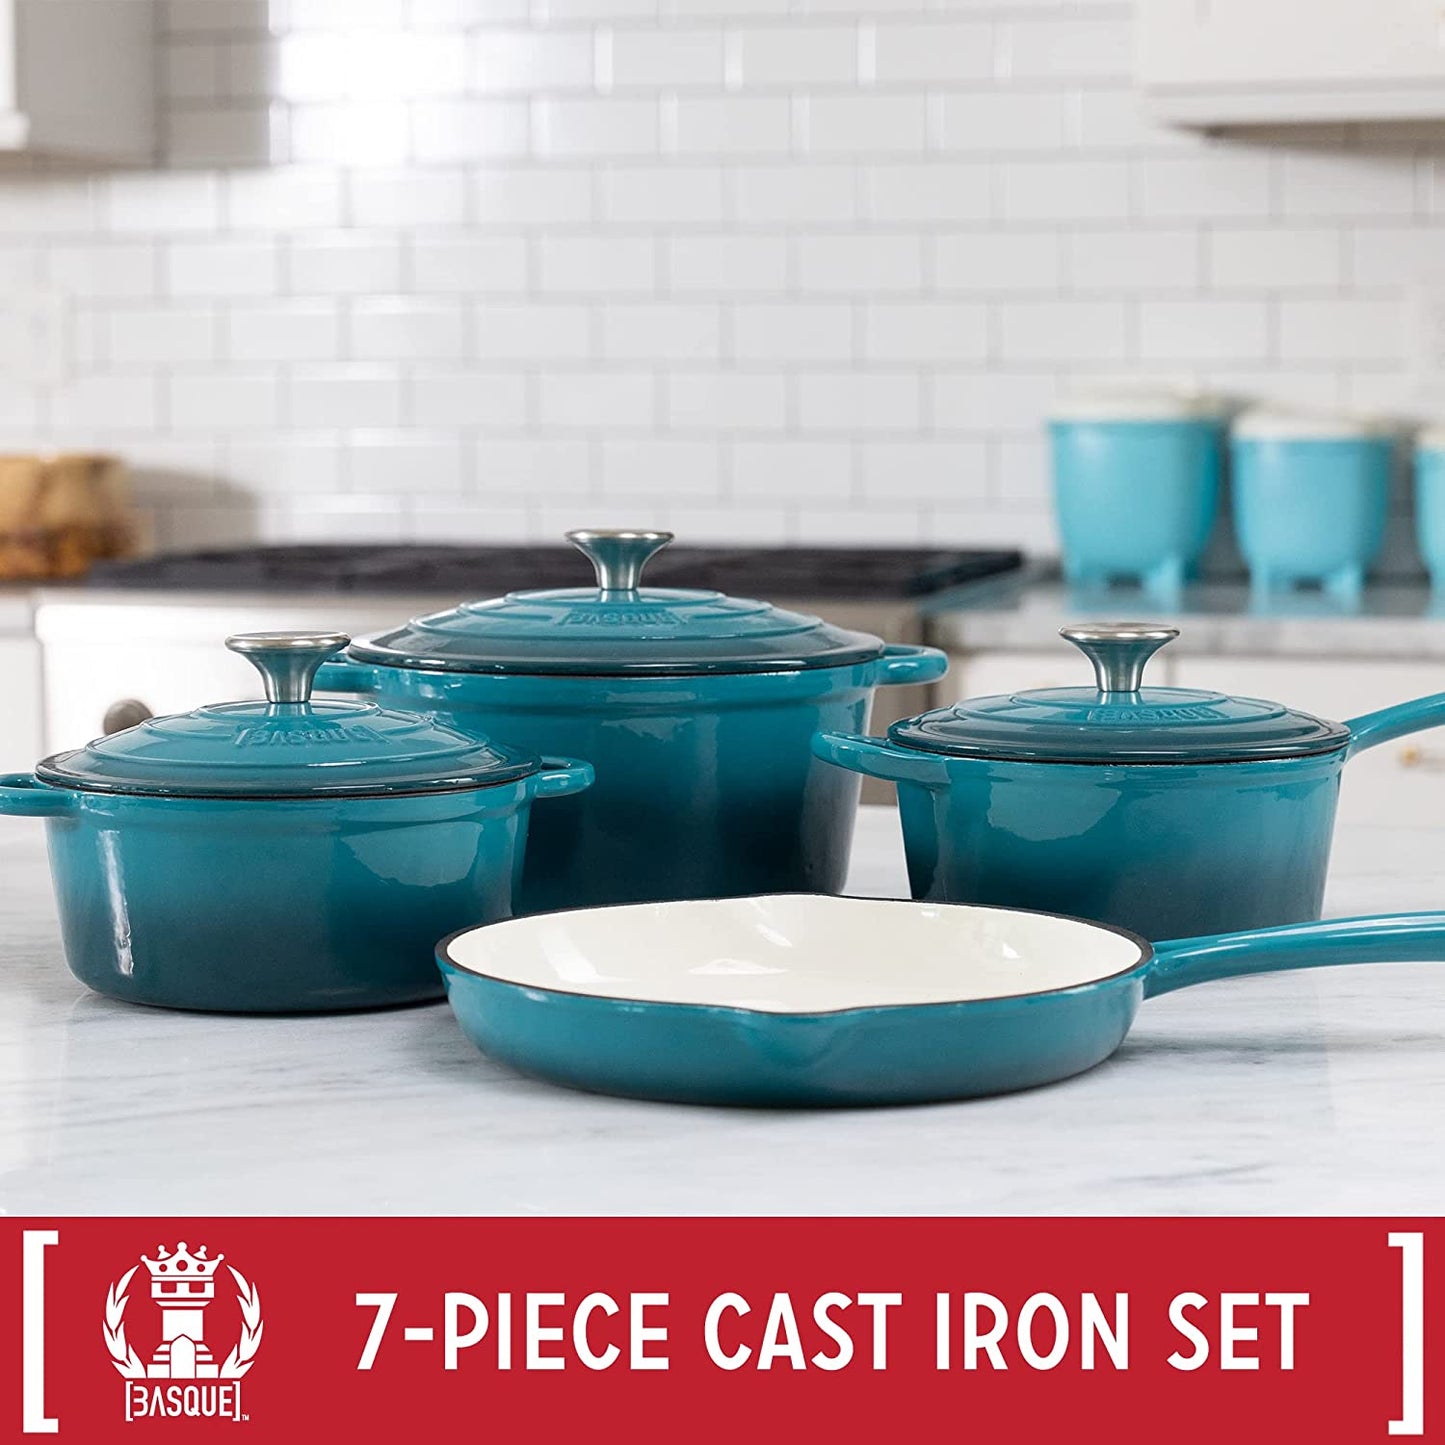 Enameled Cast Iron Cookware Set, 7-Piece Set (Biscay Blue), Nonstick, Oversized Handles, Oven Safe; Skillet, Saucepan, Small Dutch Oven, Large Dutch Oven, 10.25", 2QT, 2.25QT, 4.75QT